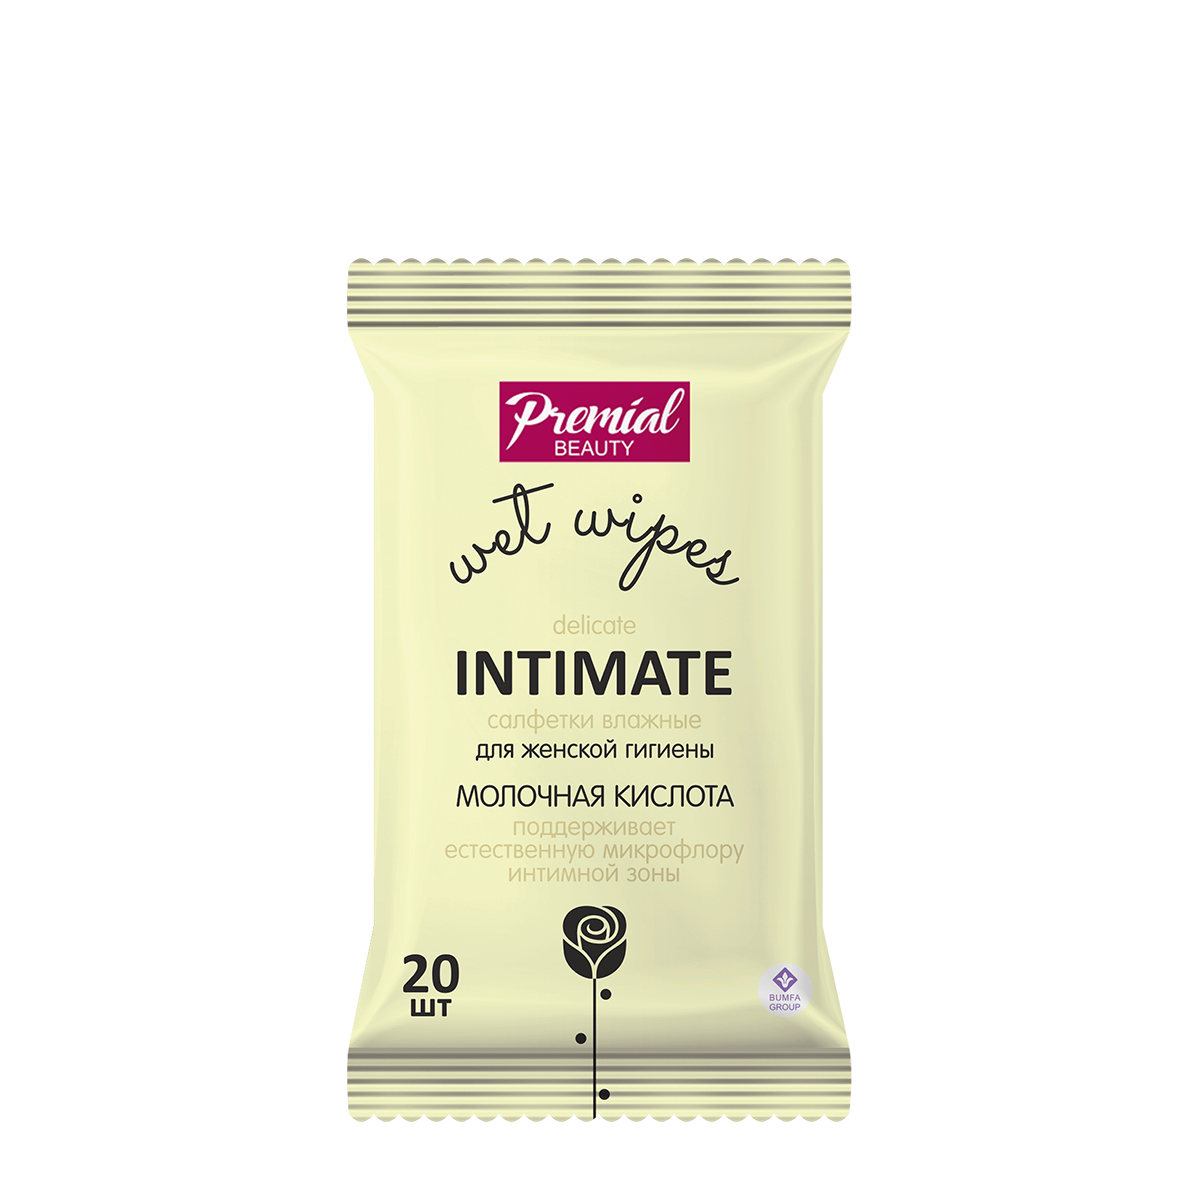 PREMIAL Салфетки влажные для женской гигиены с молочной кислотой - 20 штук - Premial